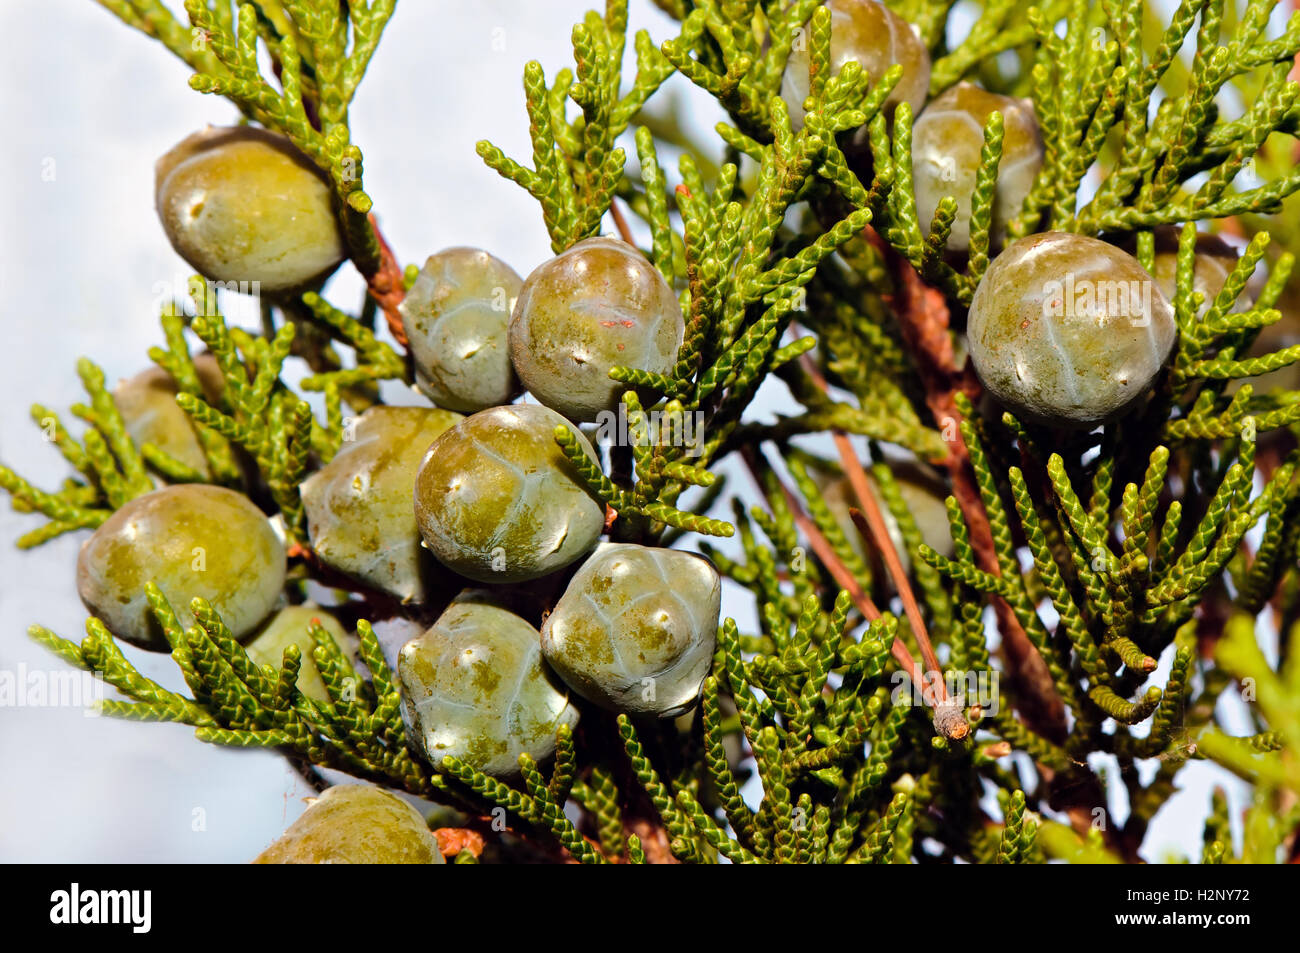 Le feuillage et les jeunes cônes de cyprès méditerranéen (Cupressus sempervirens). Banque D'Images